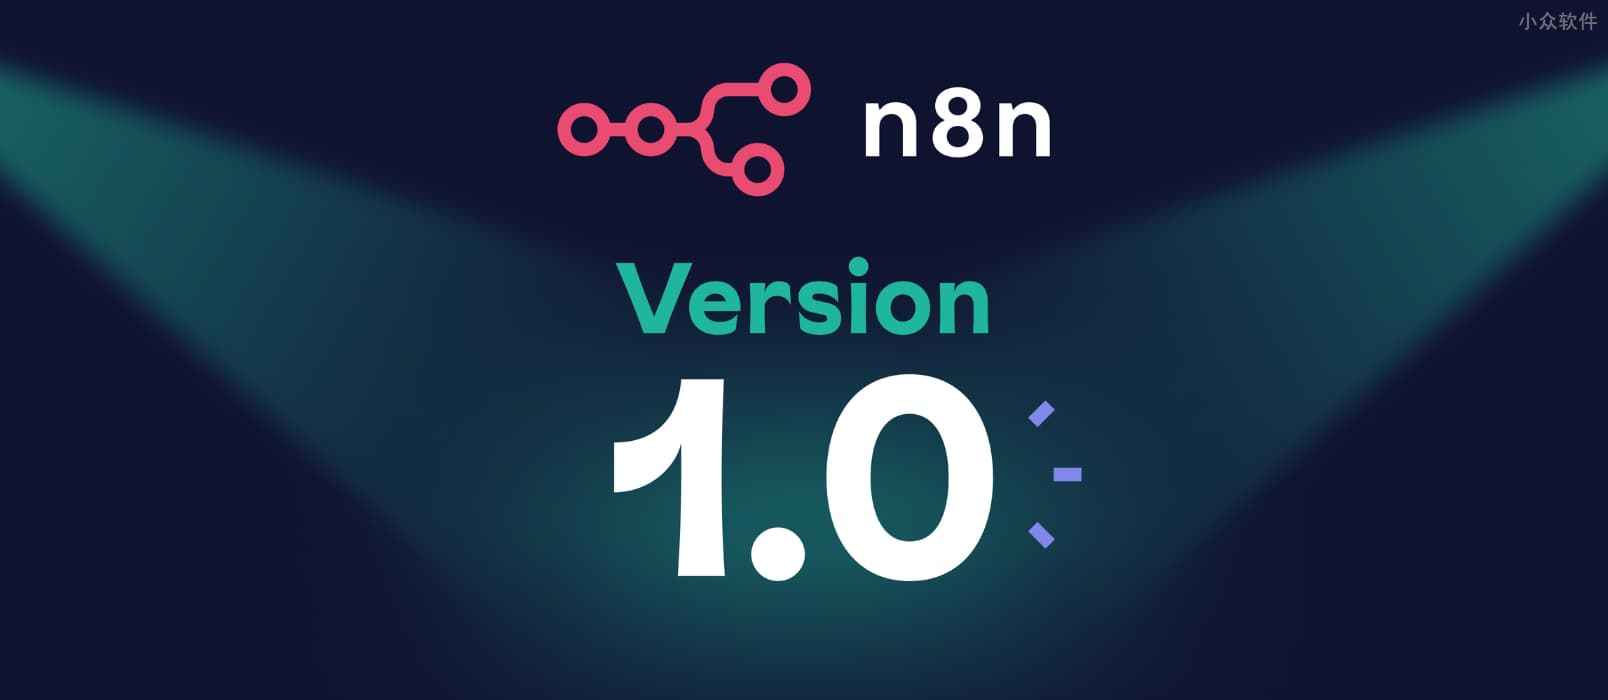 开源自动工作流工具 n8n 发布 1.0 版本